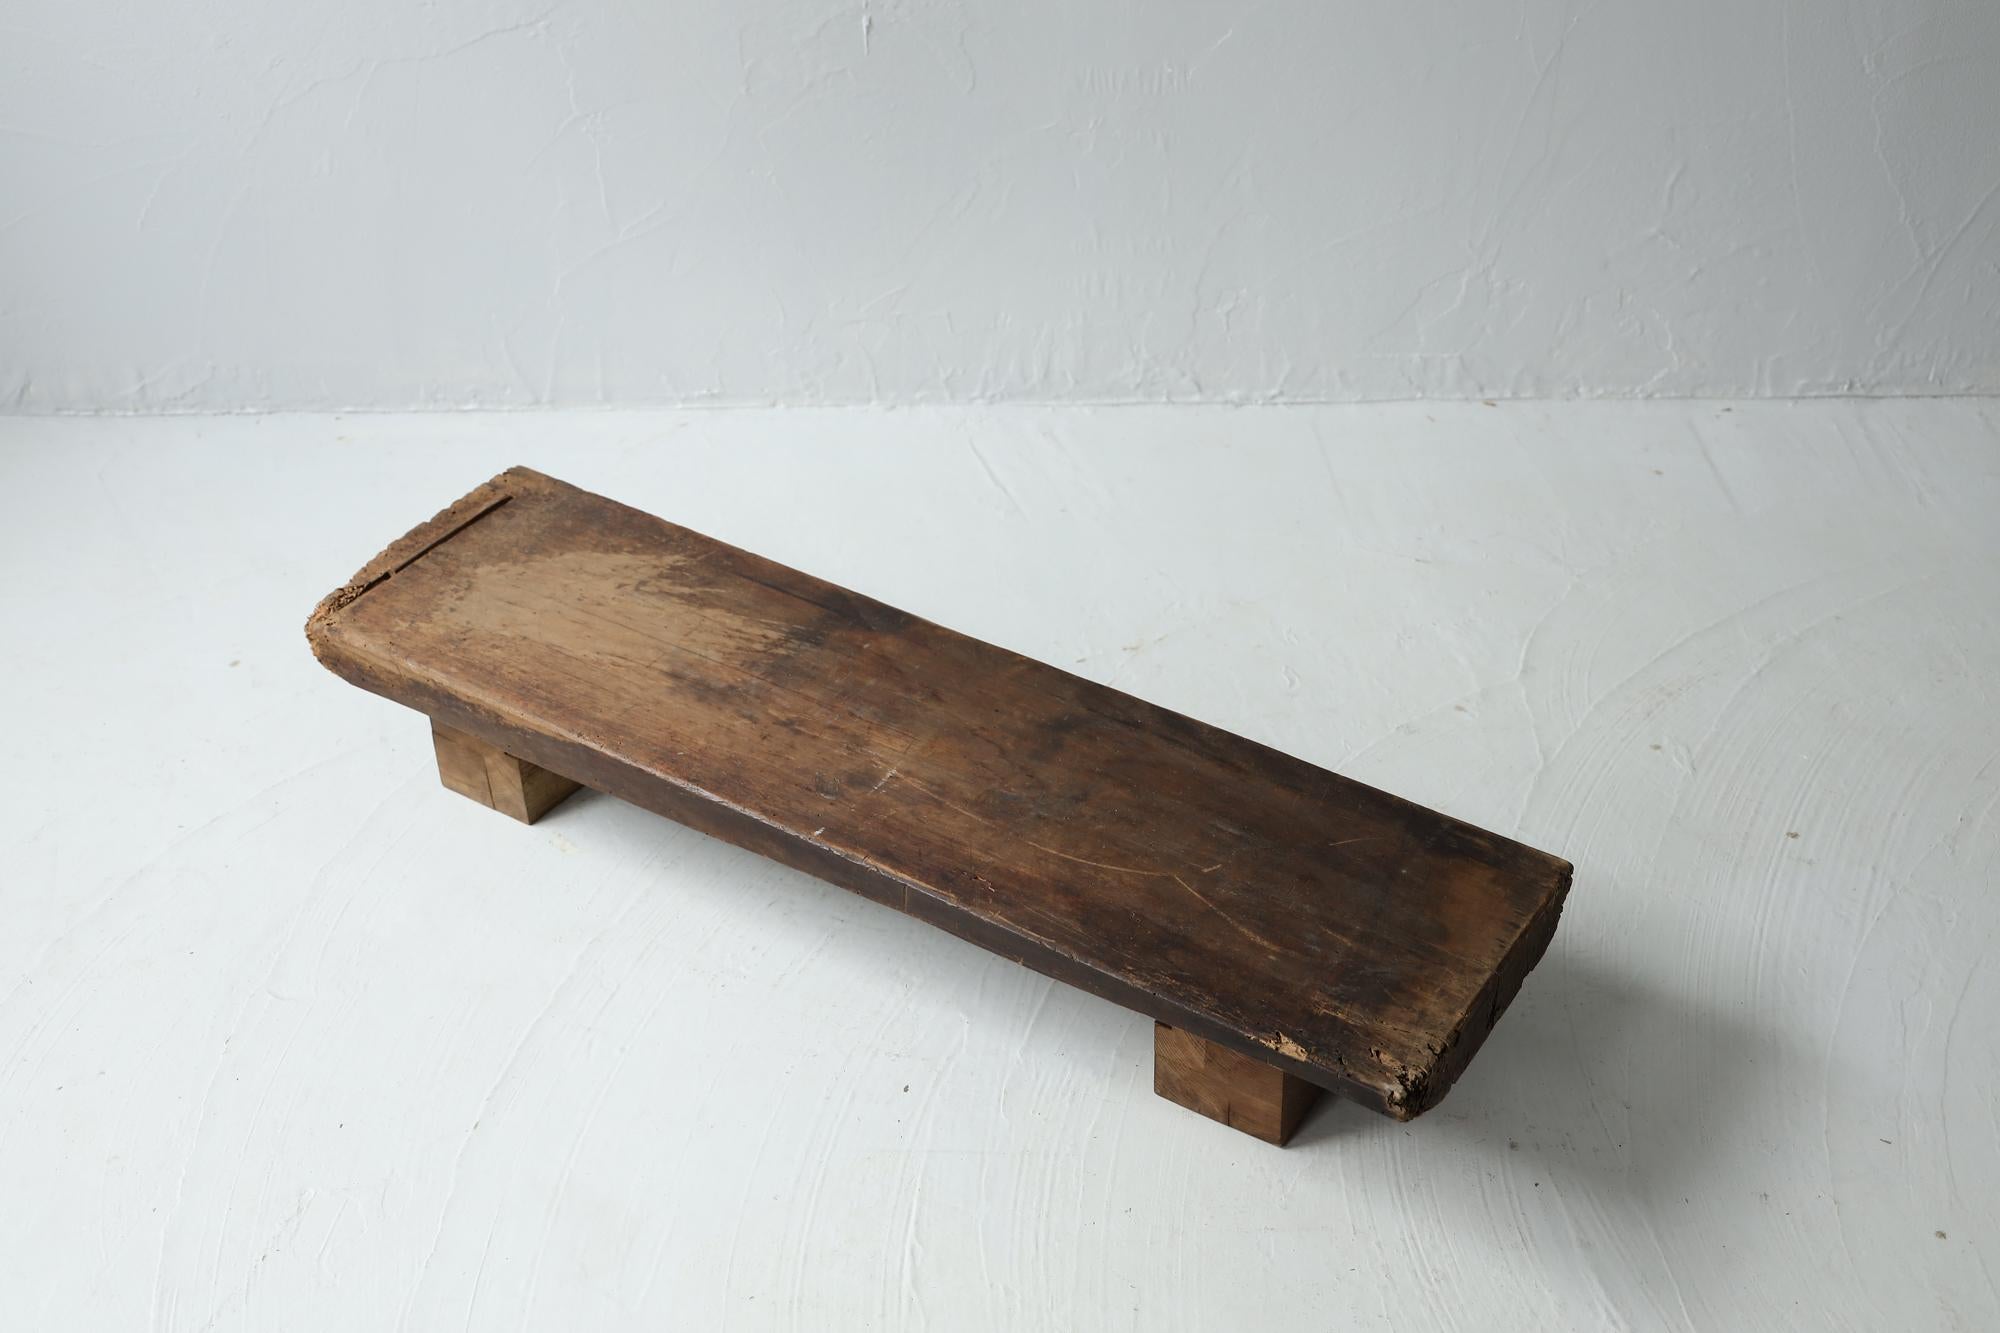 Il s'agit d'une table basse antique en bois datant de l'ère Meiji.
Elle servait de table de travail pour les menuisiers de l'époque.

Il est fabriqué en bois de zelkova japonais de haute qualité.
Le grain du bois de zelkova est très beau.

Il a une